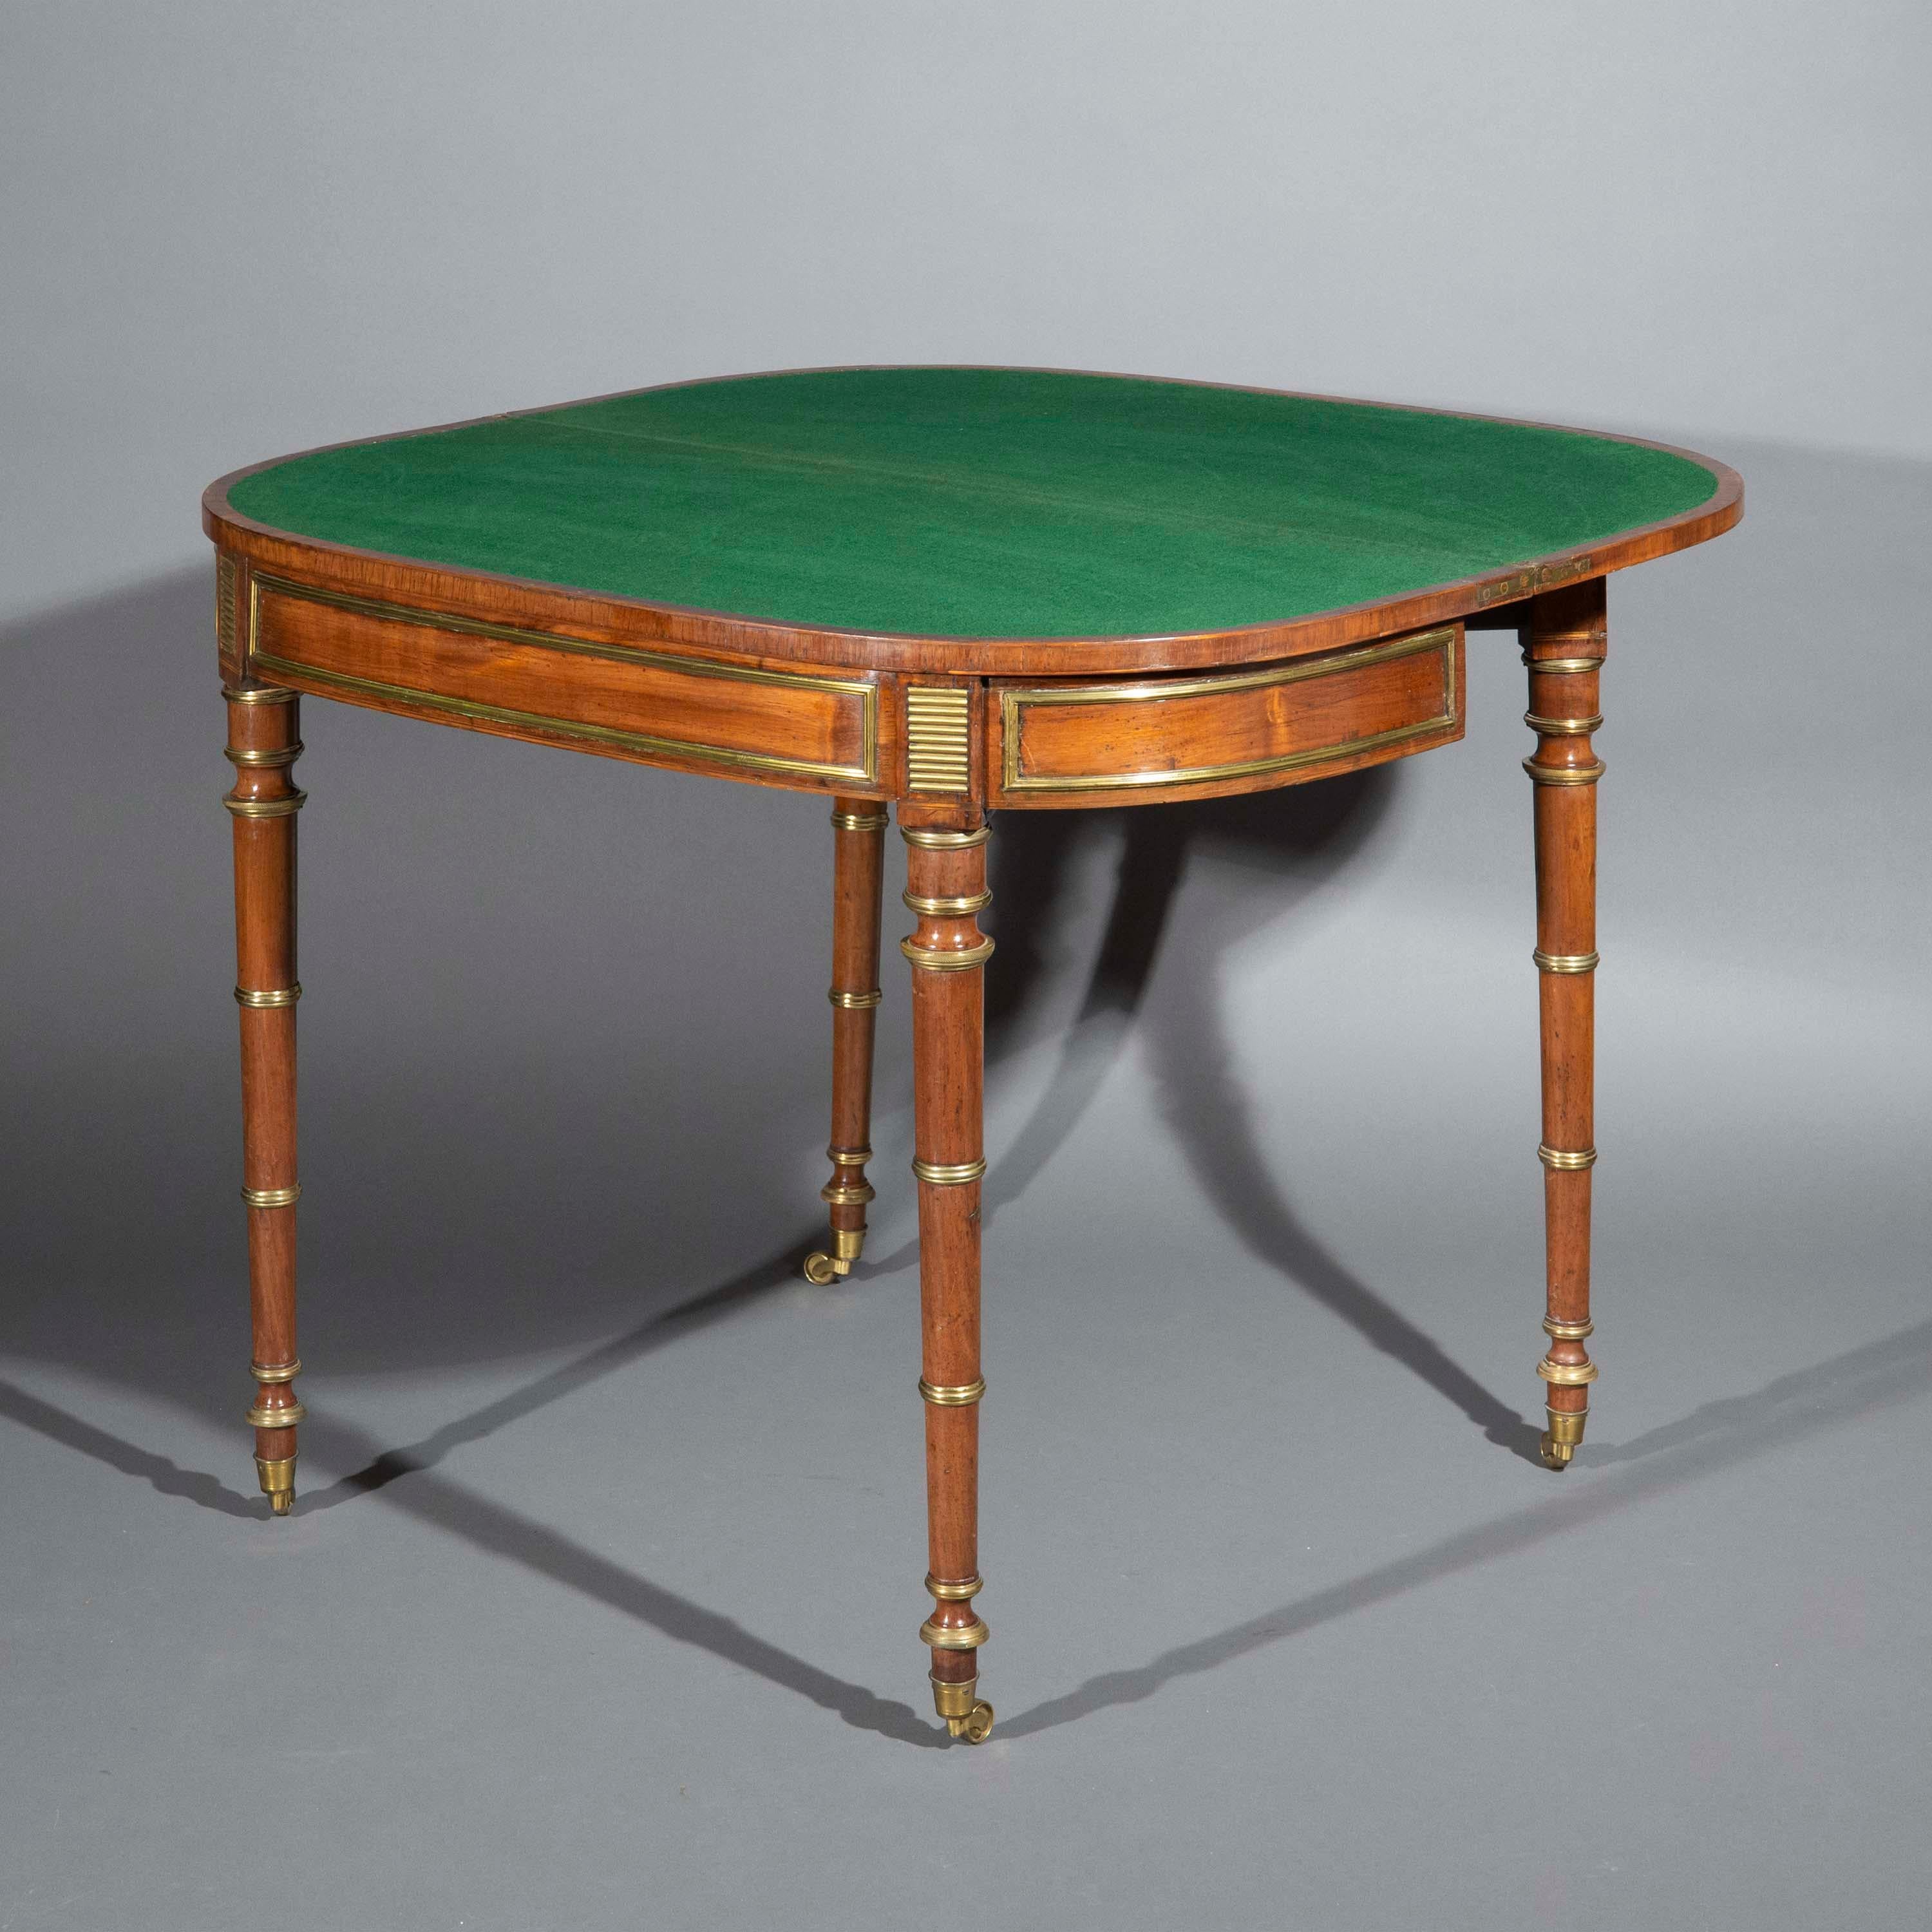 Une très belle table à cartes d'époque Régence, fermement attribuée à John McLean, 
Londres, vers 1810.

Pourquoi nous l'aimons
Les premiers meubles de John McLean, dont celui-ci est un des plus beaux exemples, sont très élégants avec leurs lignes